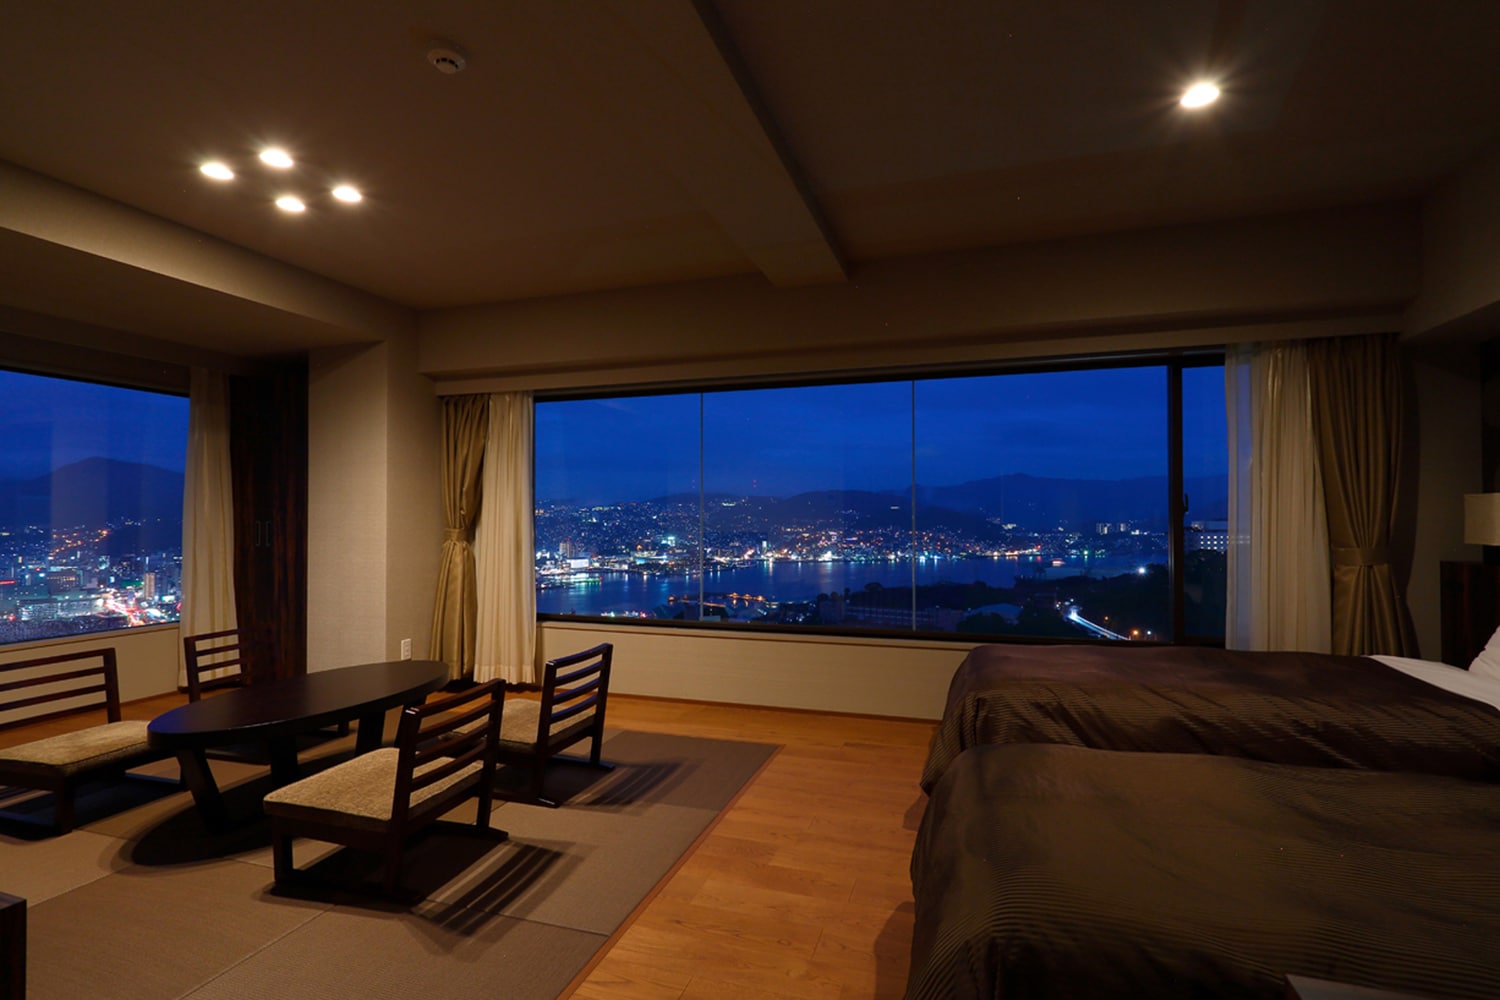 Bangunan utama grand view kamar Jepang dan Barat. Kamar dengan pemandangan luar biasa dengan jumlah kamar terbatas di mana Anda dapat melihat pemandangan malam saat menginap di tempat tidur